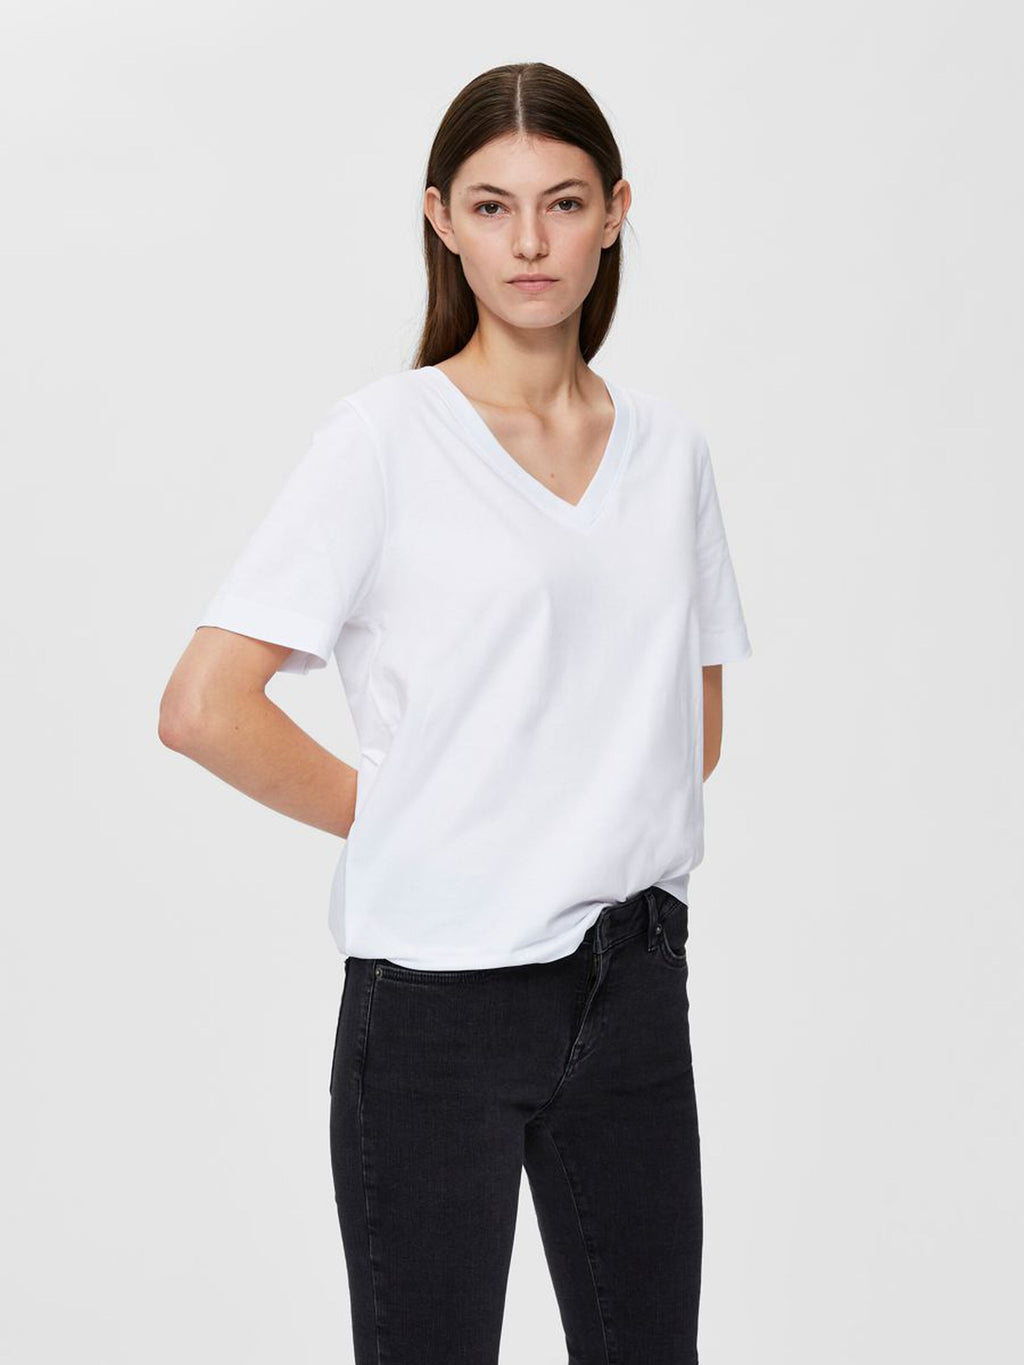 T-shirt standard v-neck, bright white